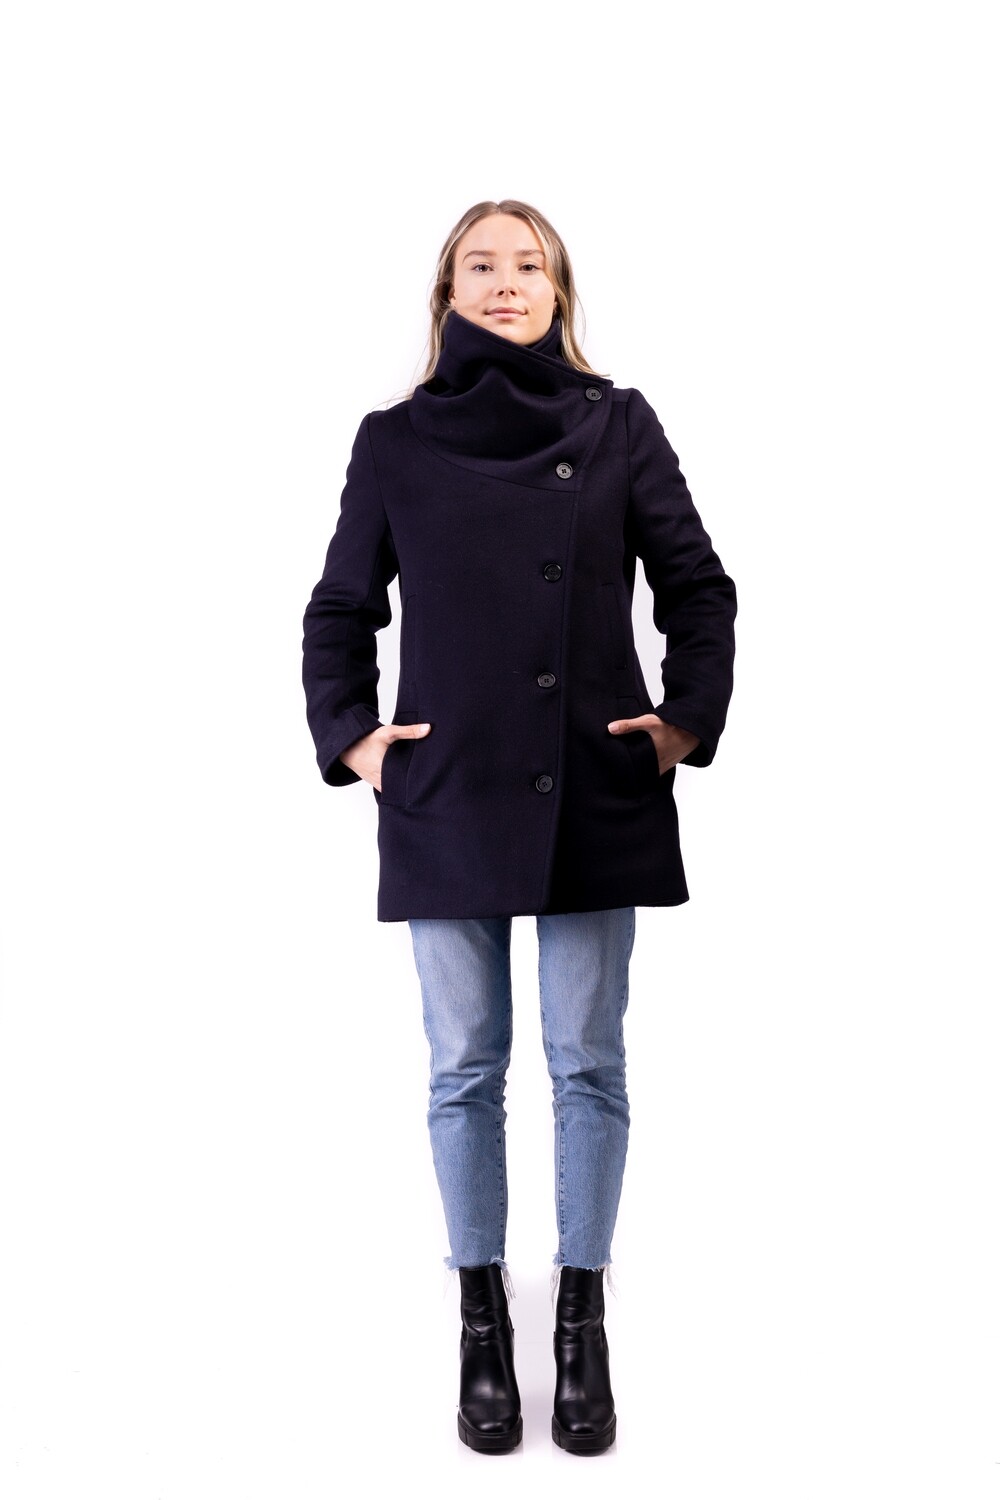 Manteau femme asymétrique - Marine